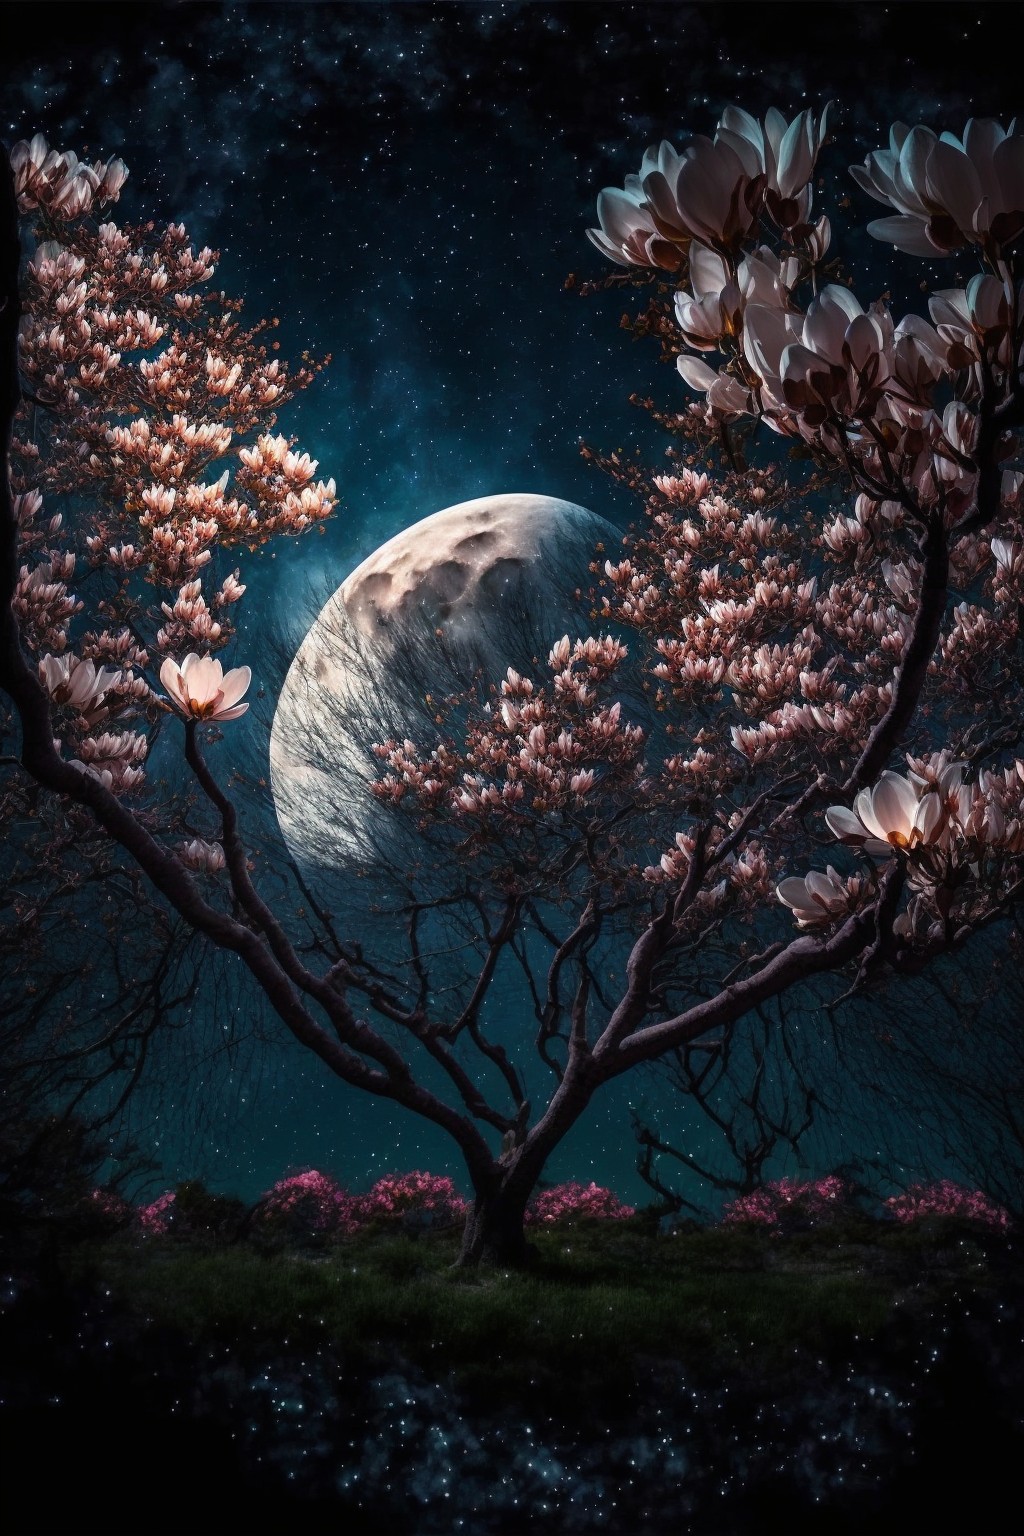 Magnolia at night